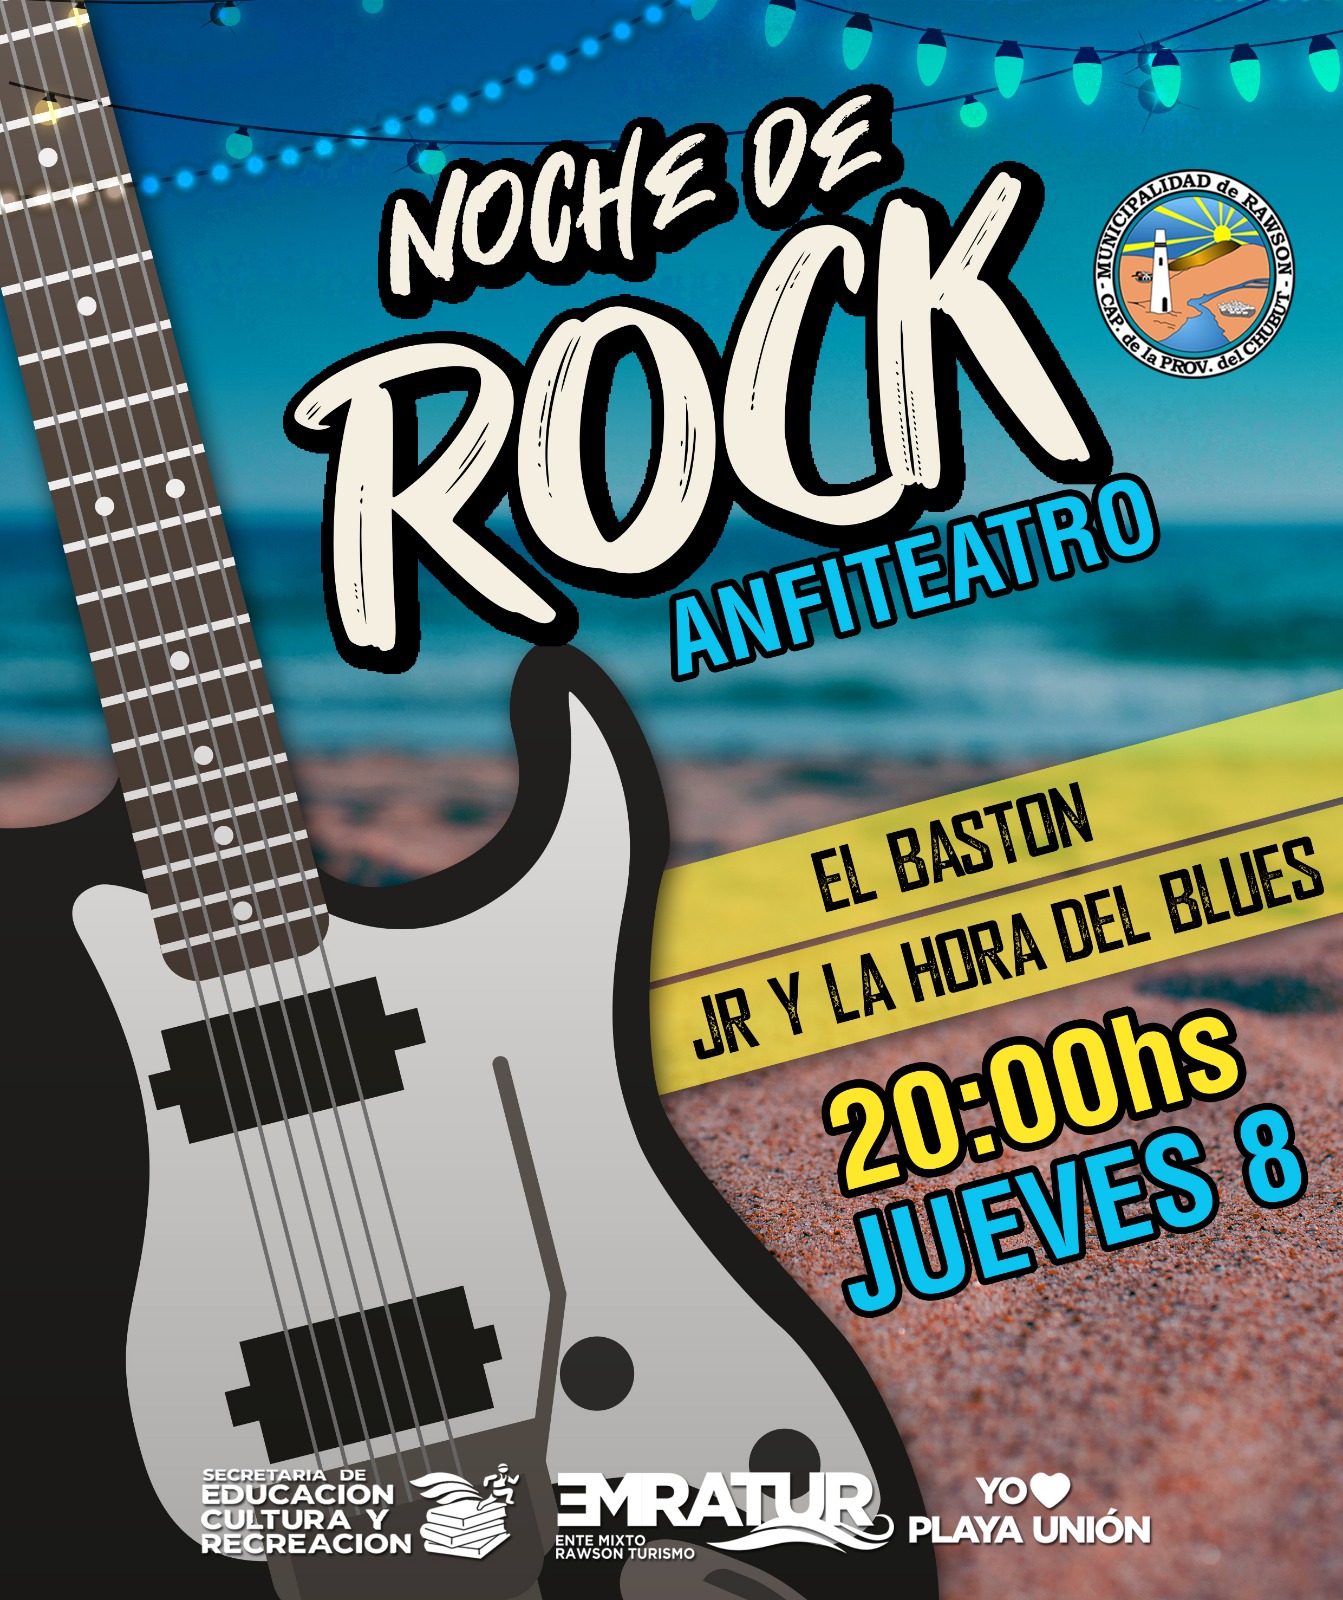 Este jueves se realiza la «Noche de Rock» en el Anfiteatro de Playa Unión